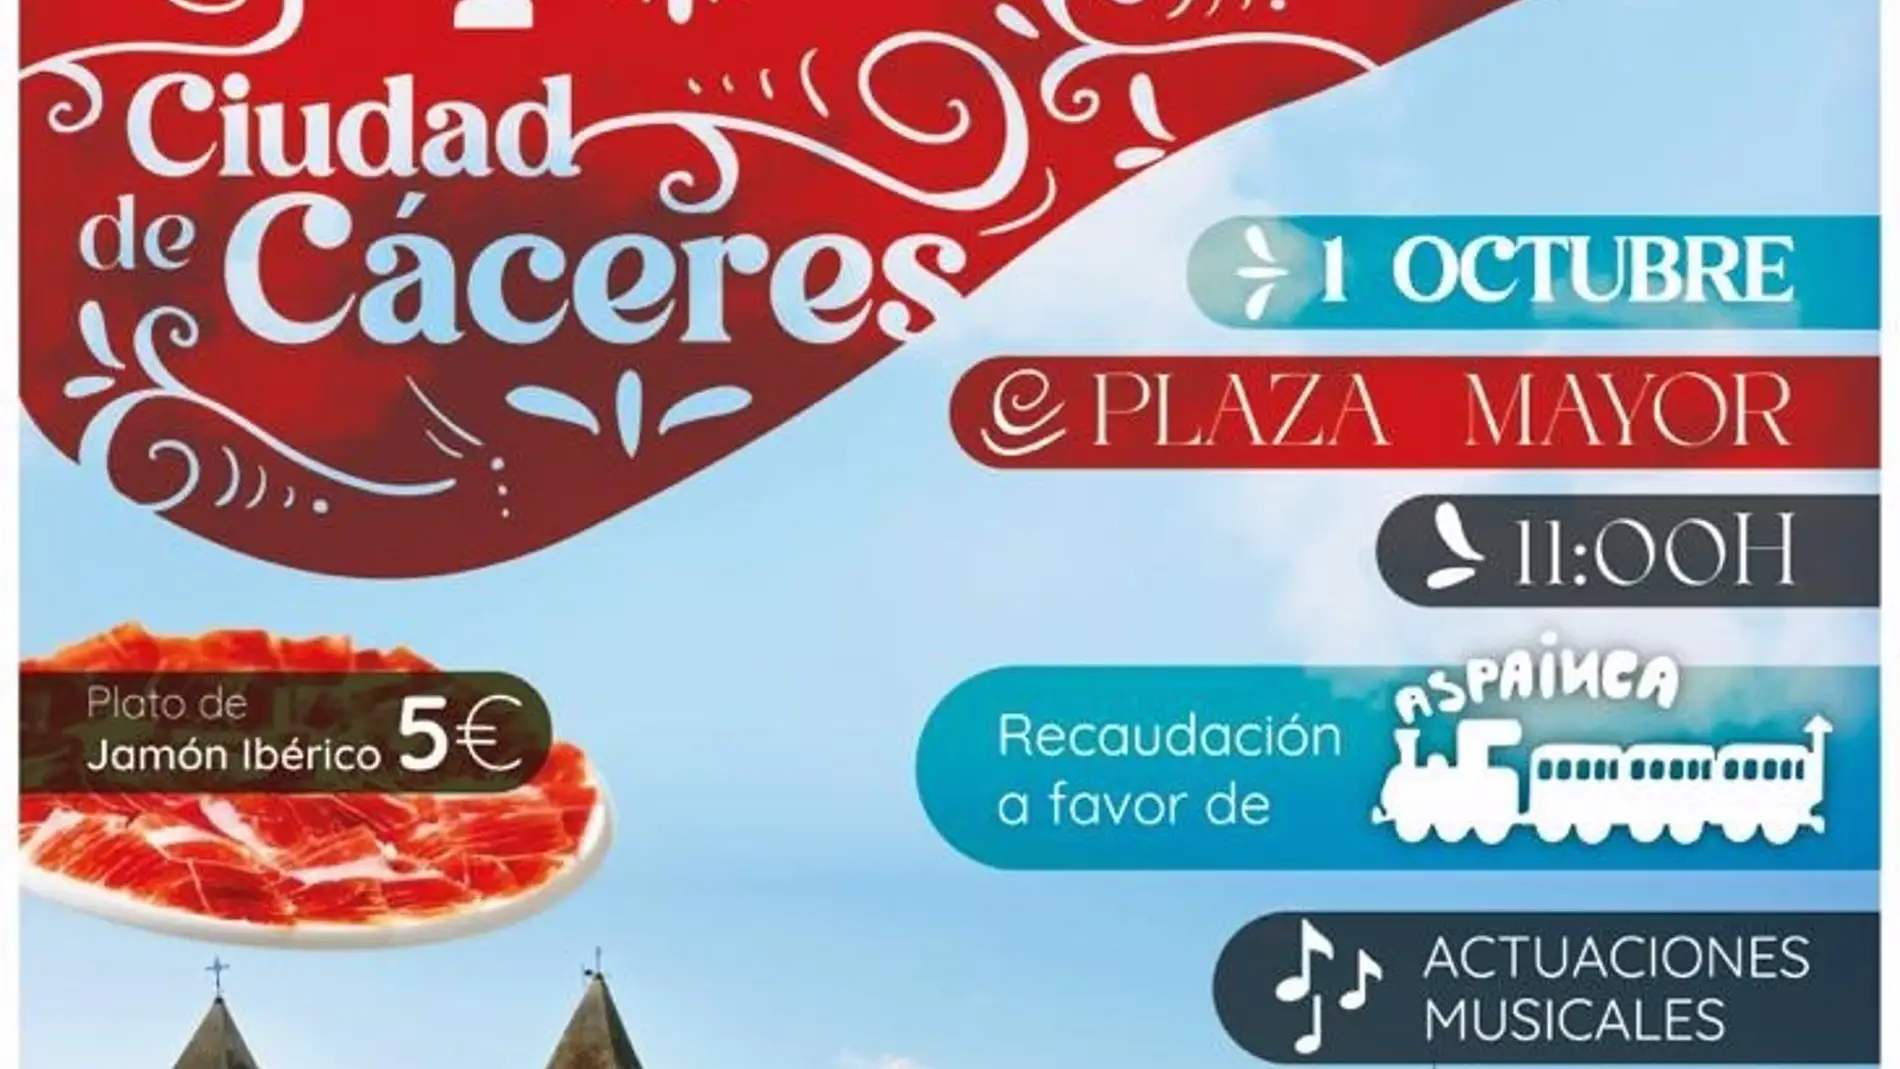 6 cortadores de jamón concursarán este domingo en la Plaza Mayor de Cáceres